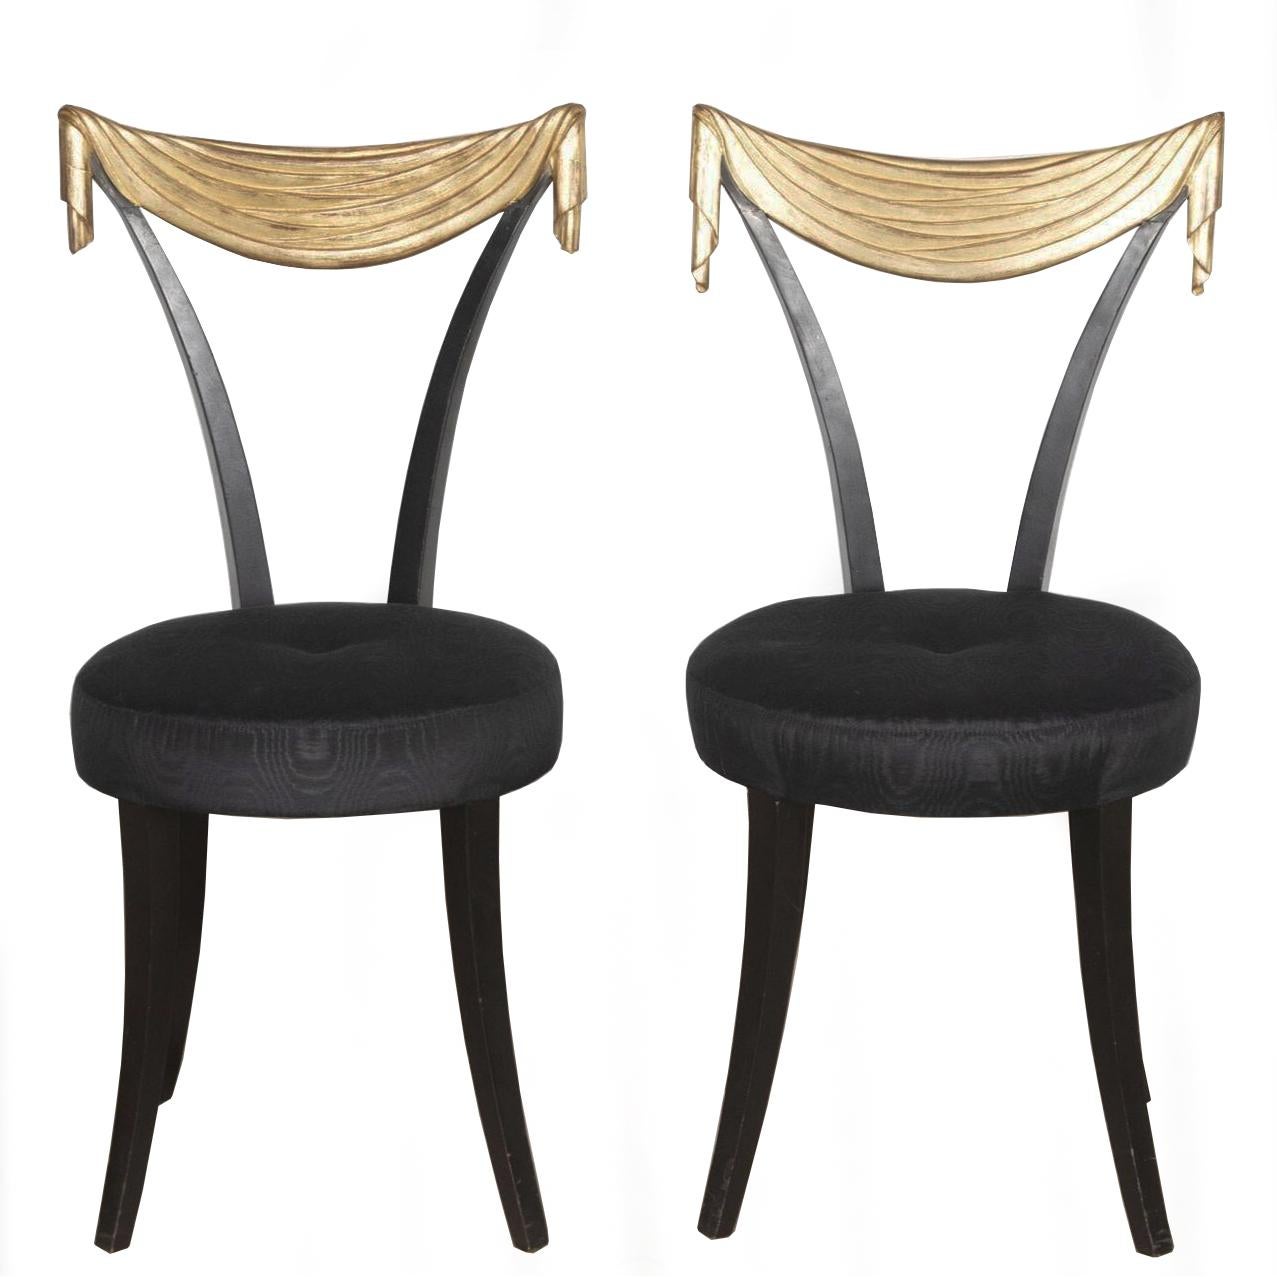 Paire excentrique de chaises d'appoint ébonisées de style Dorothy Draper, avec dossier en draperie dorée, reposant sur d'élégants pieds fuselés. 

Nouvellement retapissé dans une somptueuse moire de soie noire tissée.